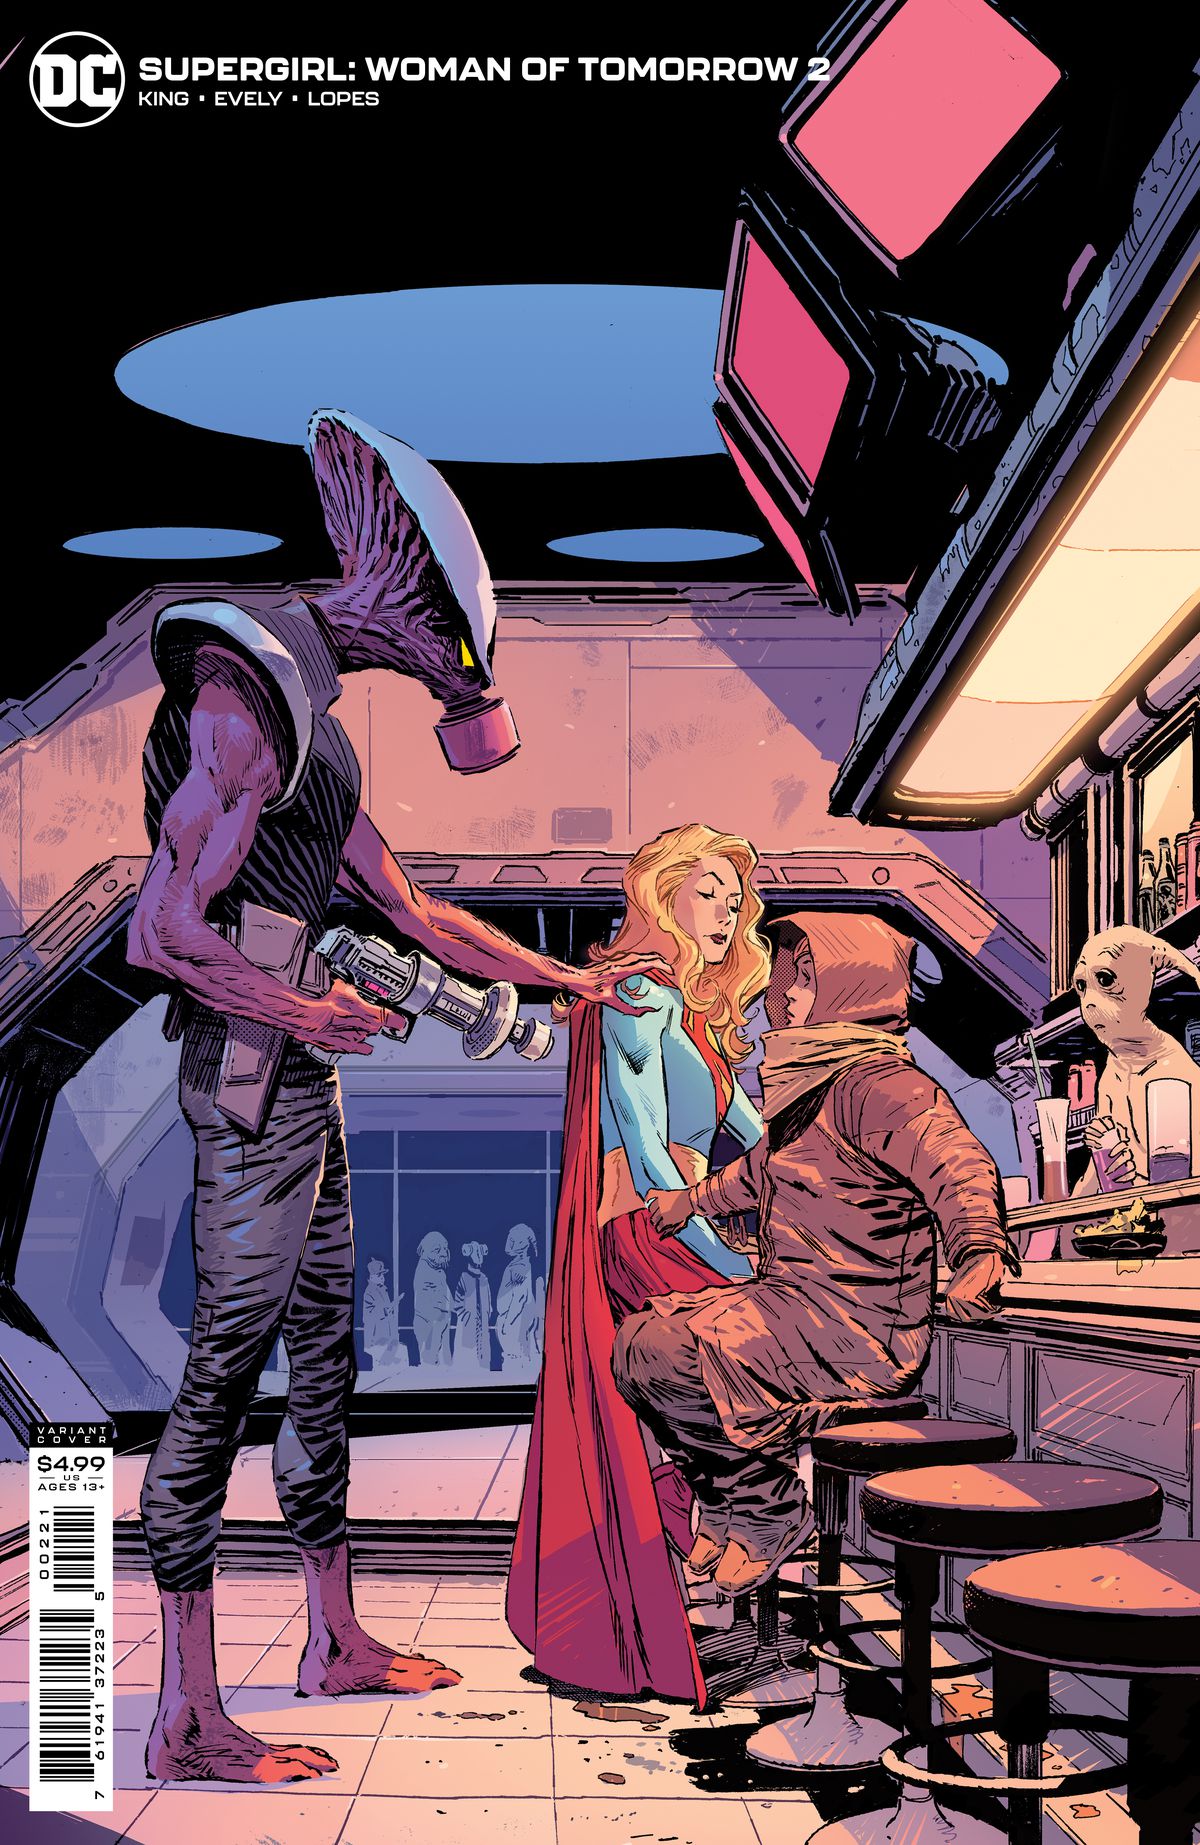 Supergirl viene avvicinata da un alieno con una pistola in un bar alieno sulla copertina di Supergirl: Woman of Tomorrow # 2, DC Comics (2021). 